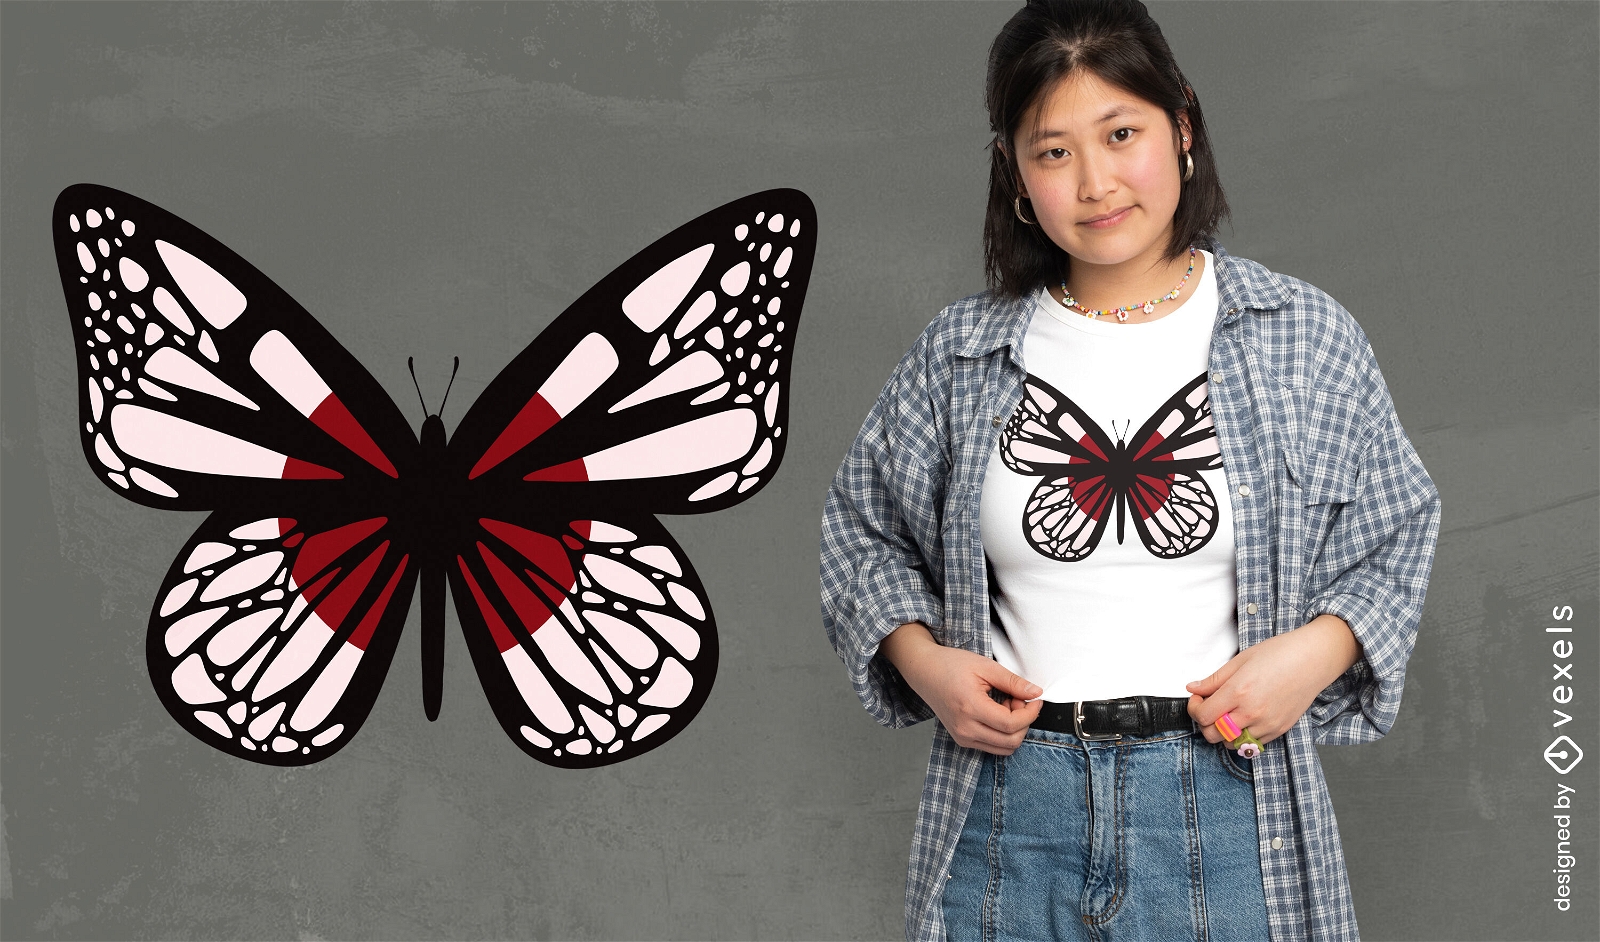 Design de camiseta com borboleta japonesa